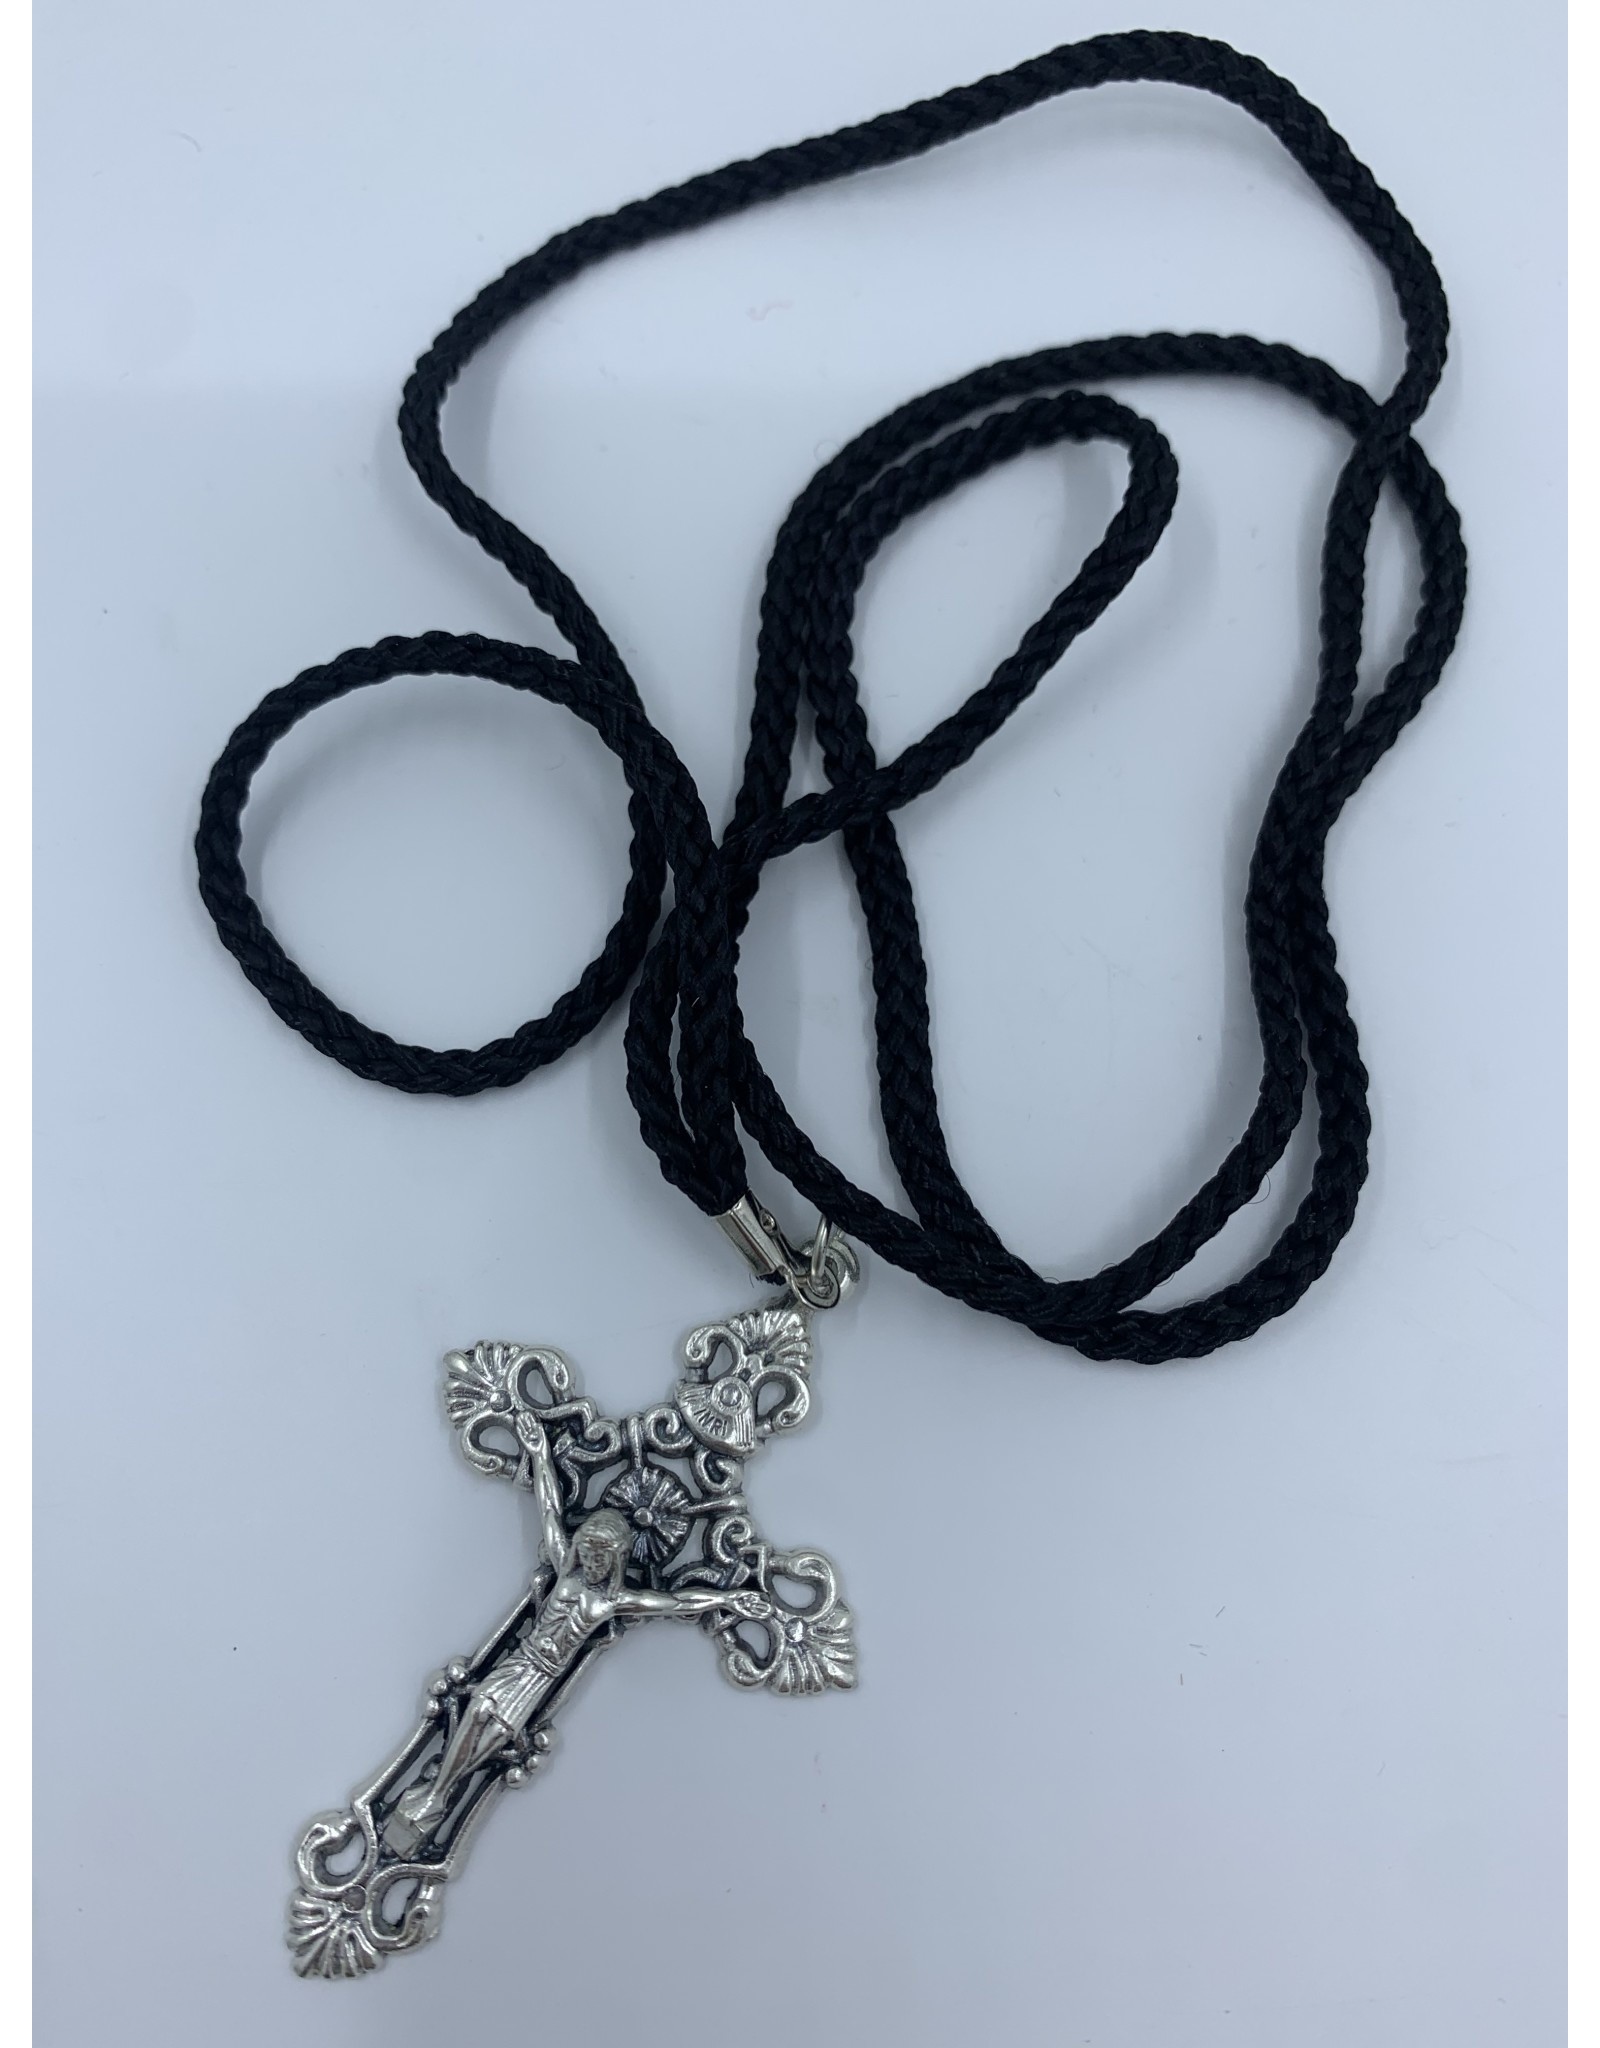 Devon Pendant Crucifix - 2.25" Black Cord